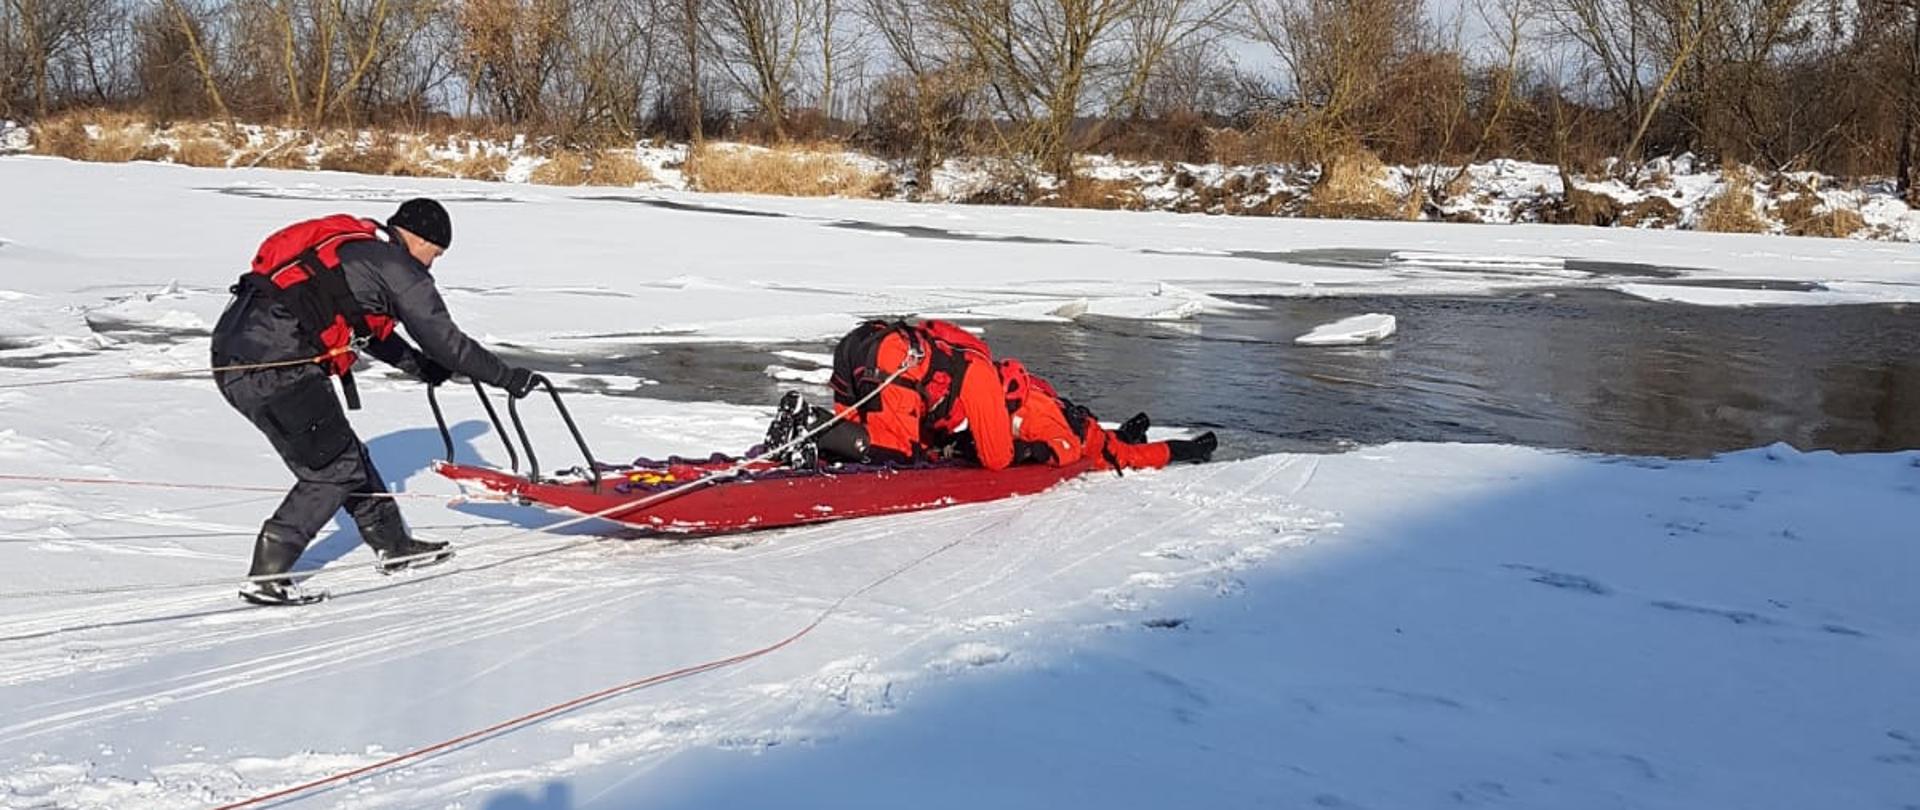 Dwóch ratowników na zamarzniętym akwenie przy pomocy sań lodowych podejmuje próbę wydobycia poszkodowanego na brzeg.